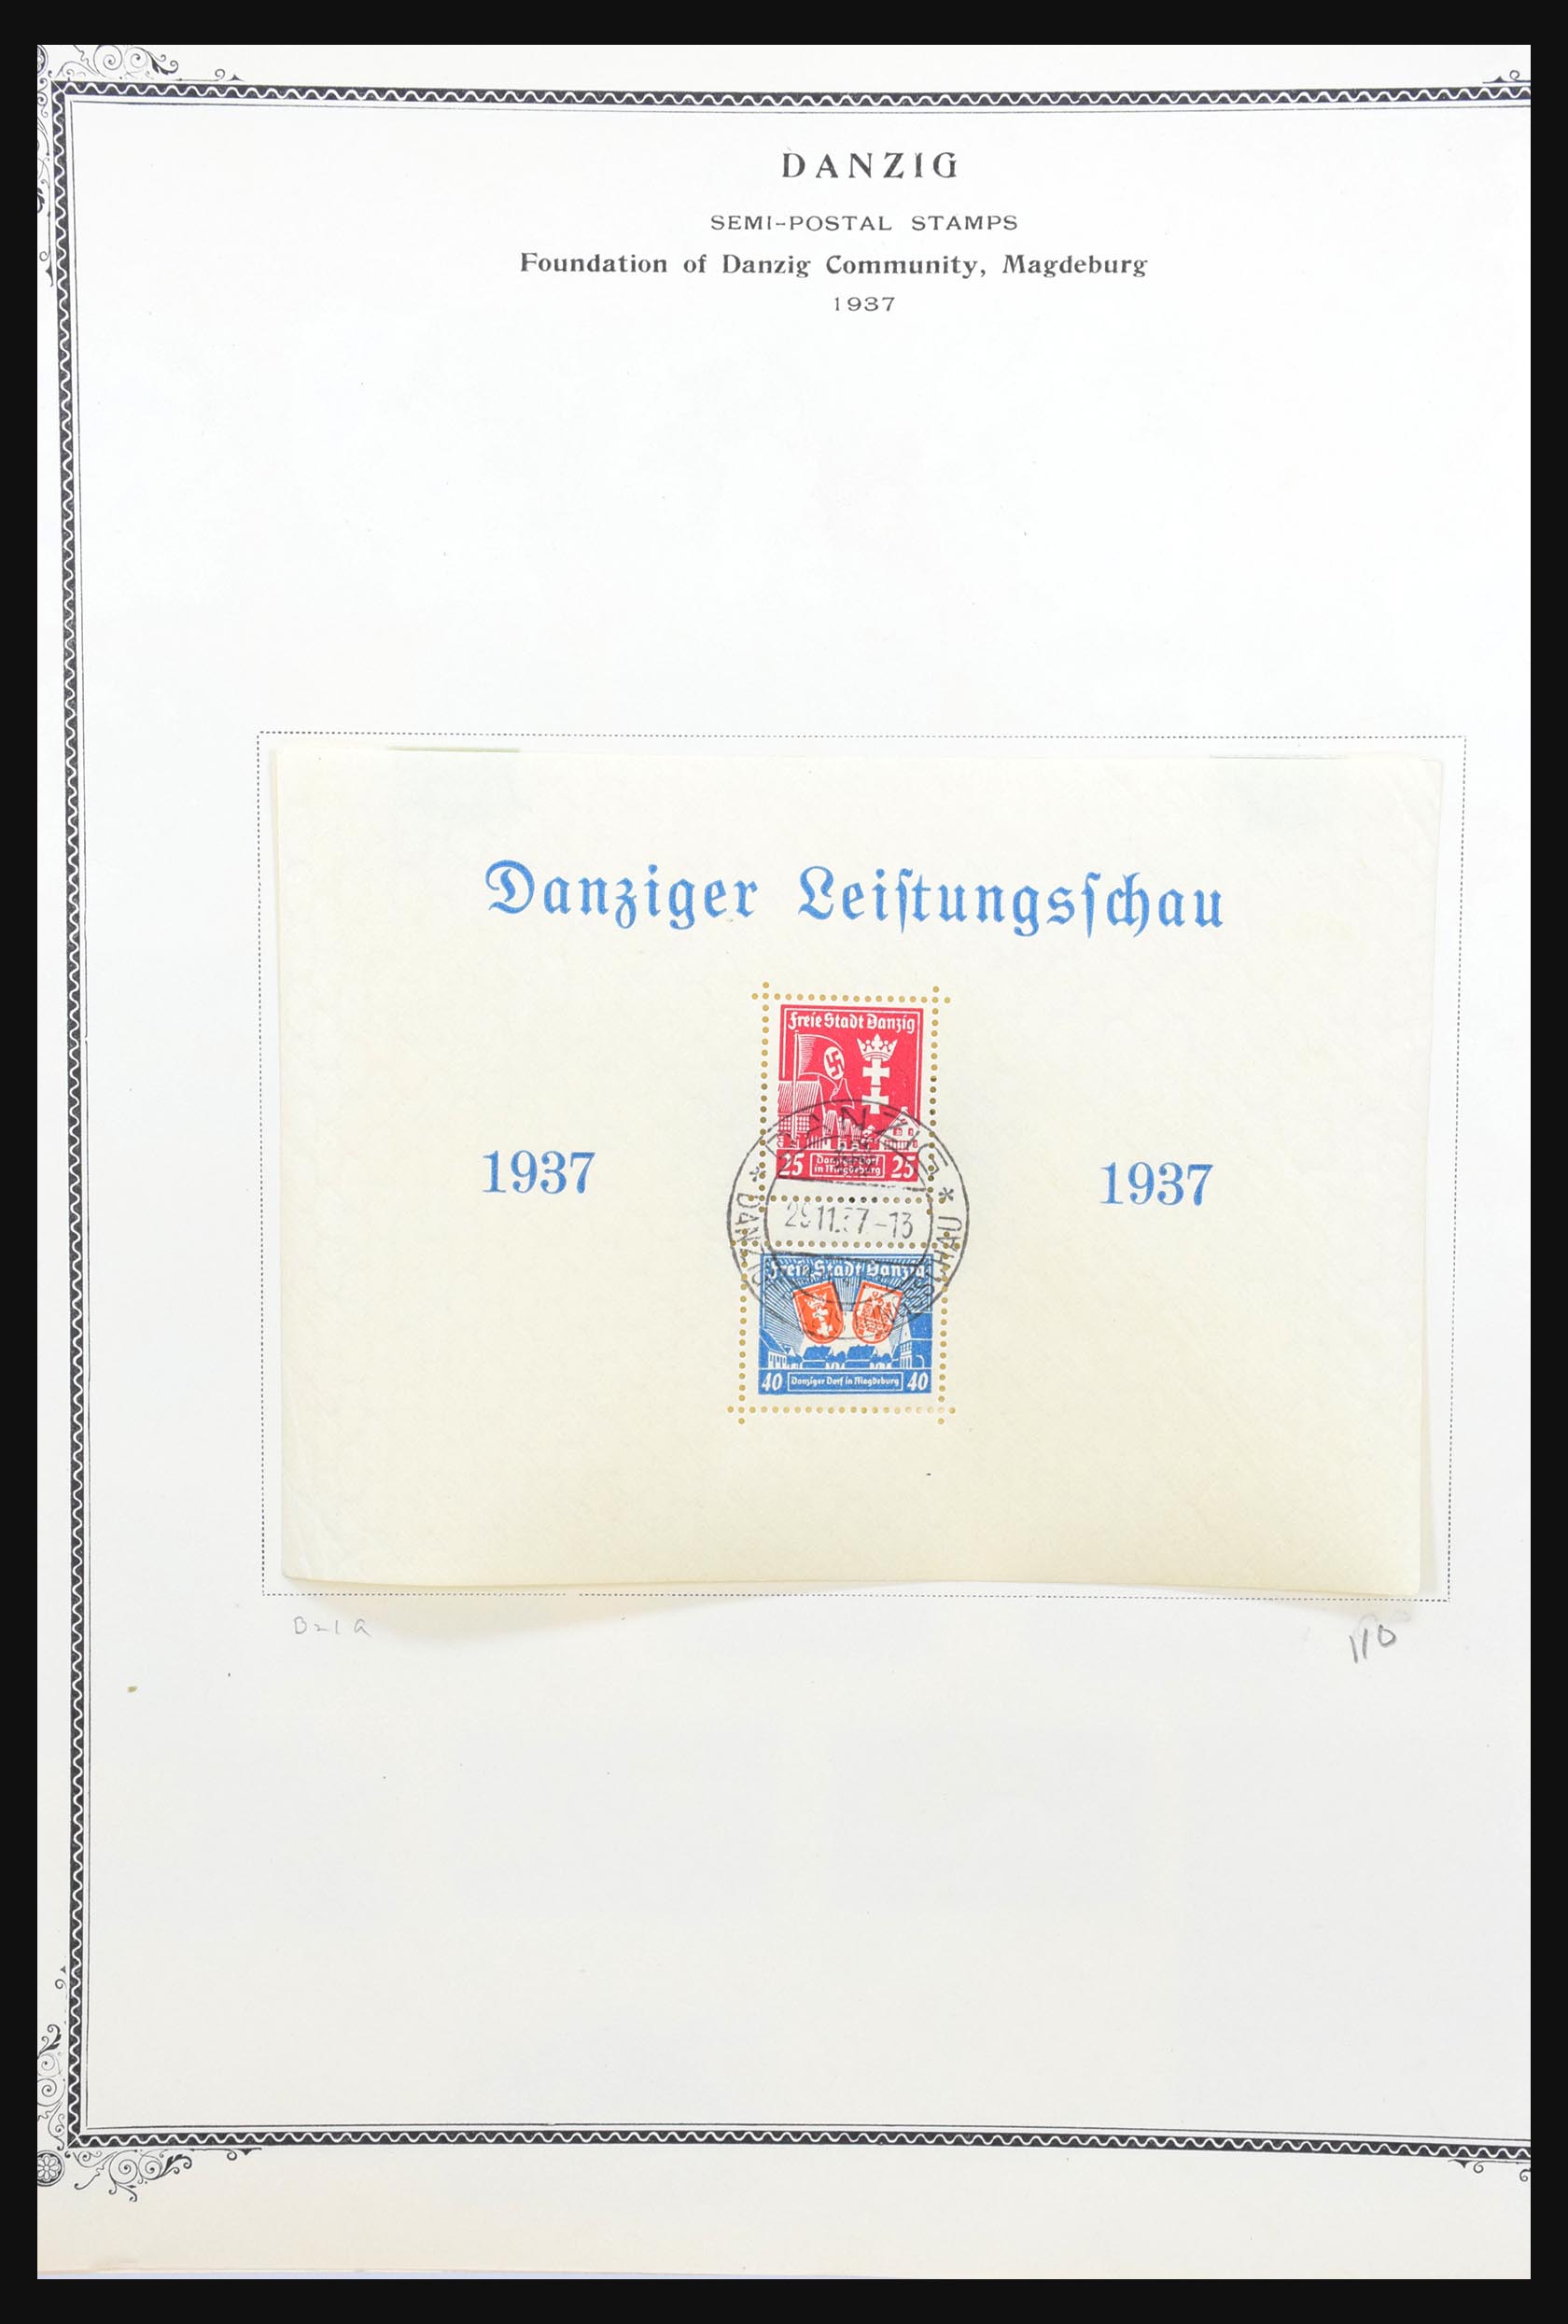 31300 075 - 31300 Duitsland superverzameling 1849-1990.